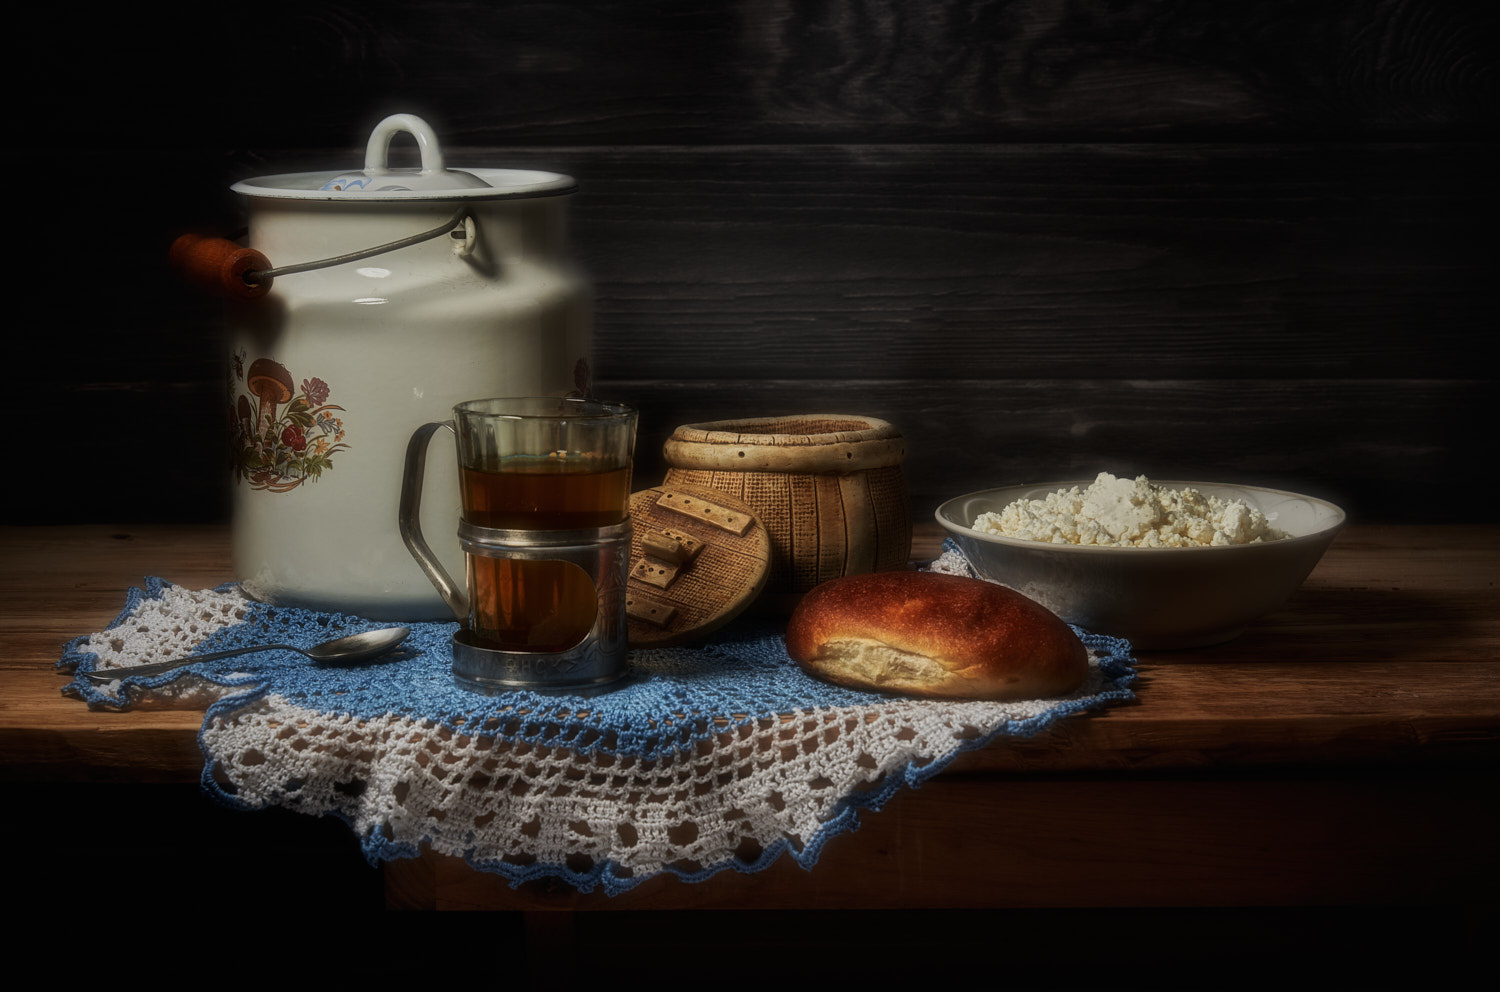 С пирожком и творожком натюрморт композиция постановка сцена посуда предметы еда чай пирожок творог